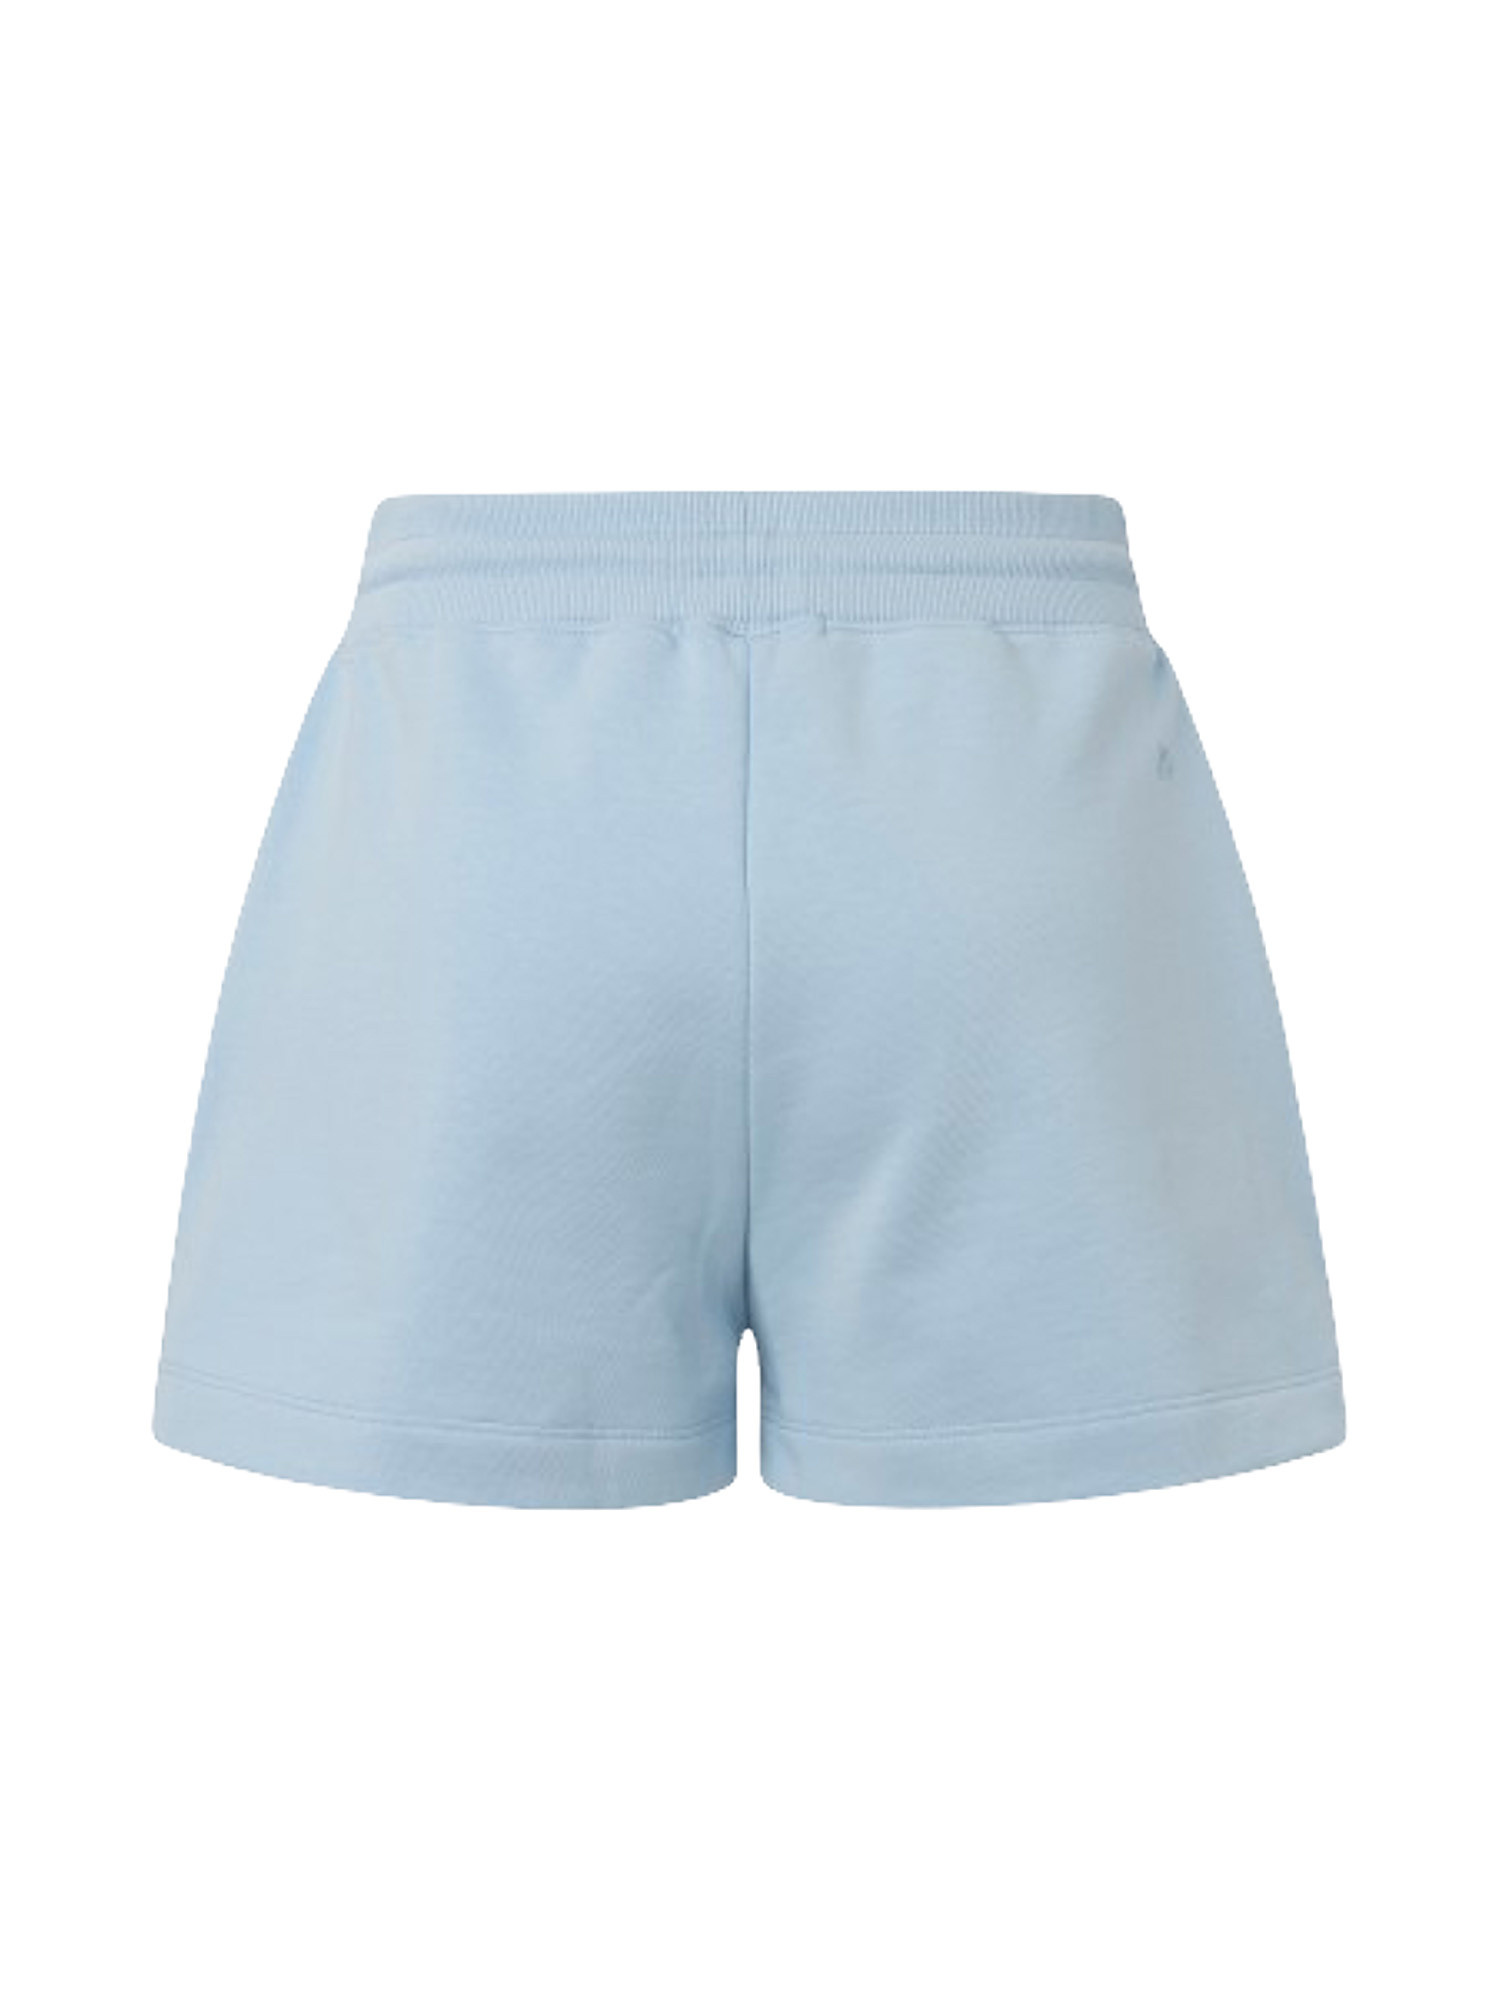 Shorts with elastic waist, Blue Celeste, large image number 1